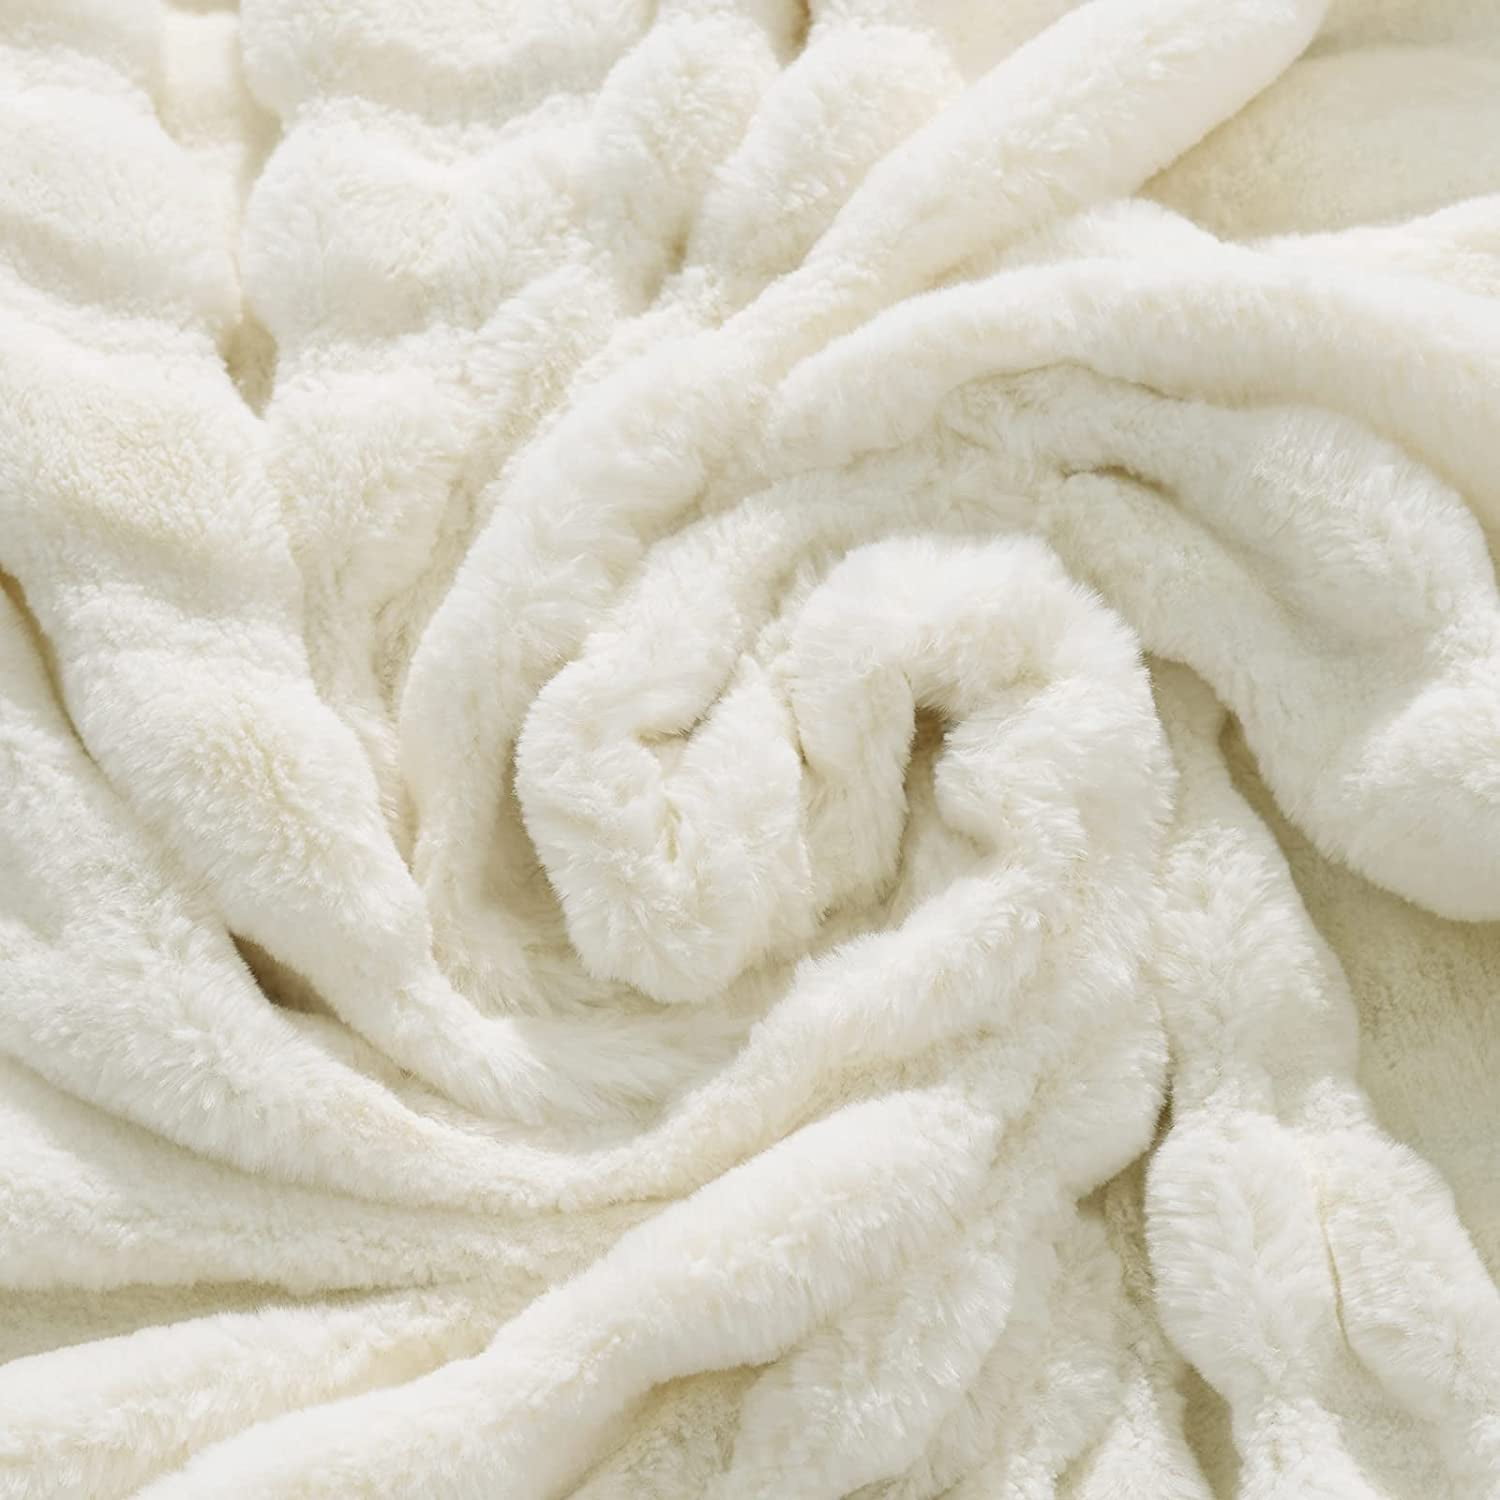 NEXHOME PRO Faux Fur Throw Blanket Beige, Luxury Warm Fuzzy Cozy